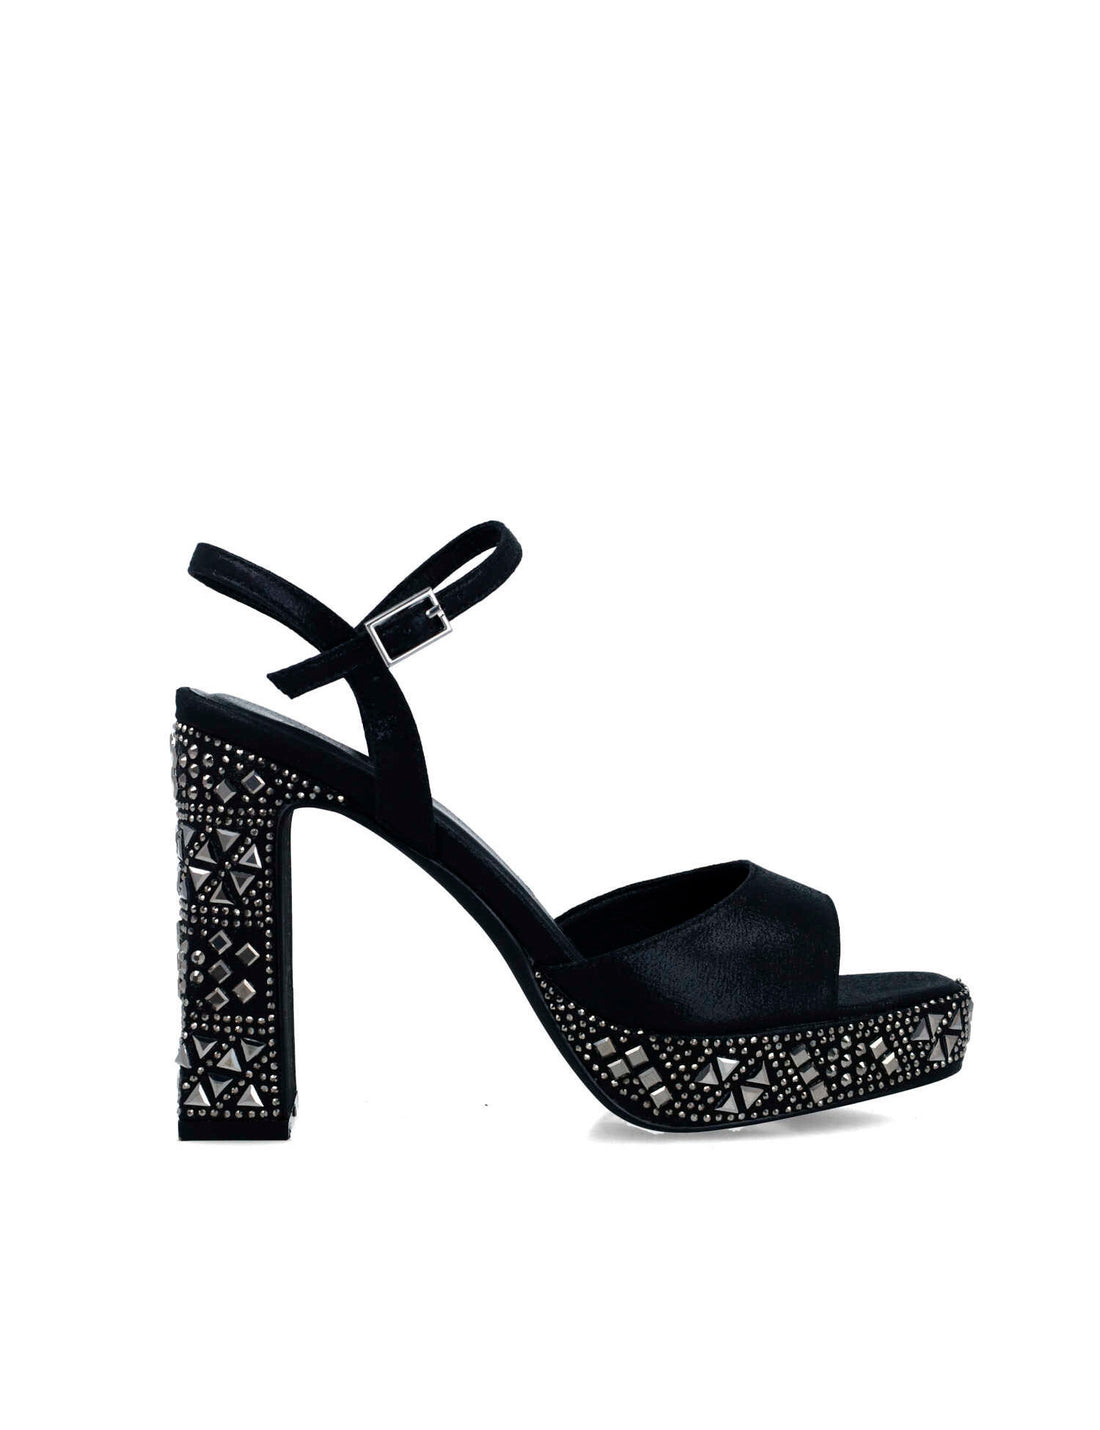 Black Embellished Platform Sandals_24877_01_01